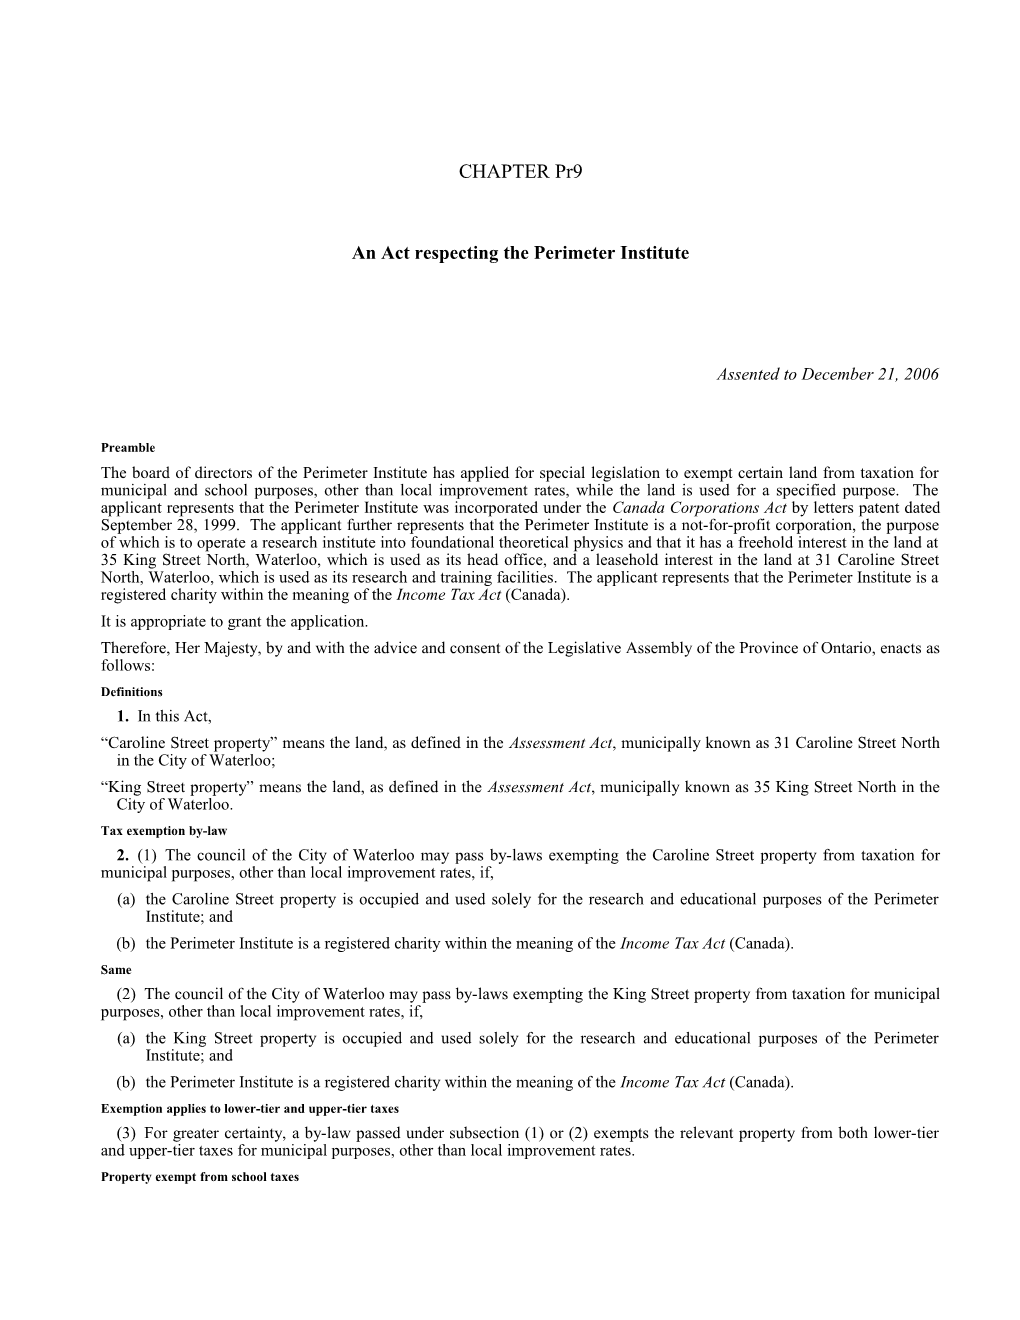 Perimeter Institute Act, 2006, S.O. 2006, C. Pr9 - Bill Pr31